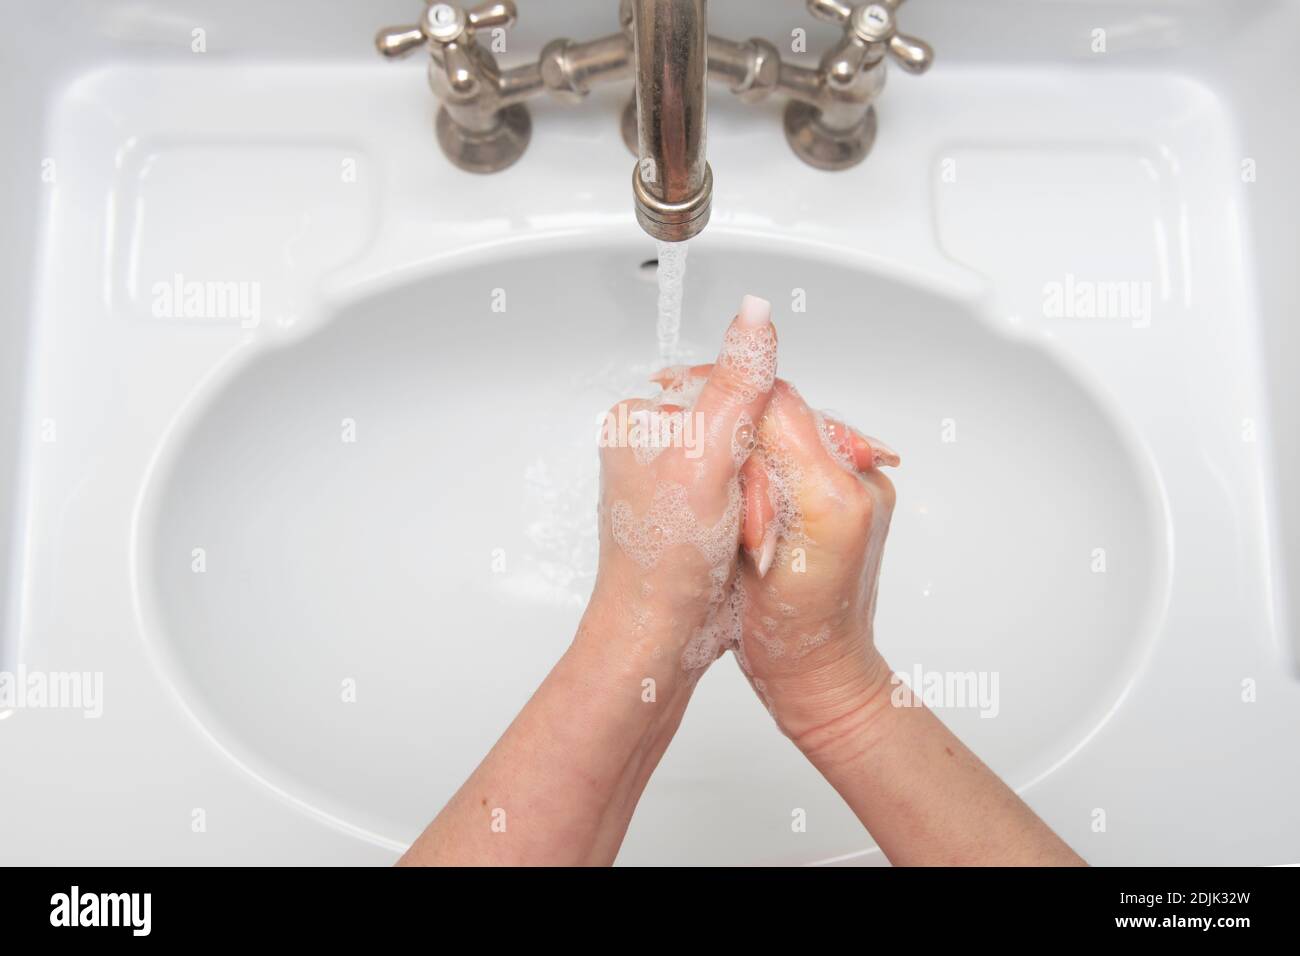 Frau Hände waschen unter fließendem Wasser Stockfoto